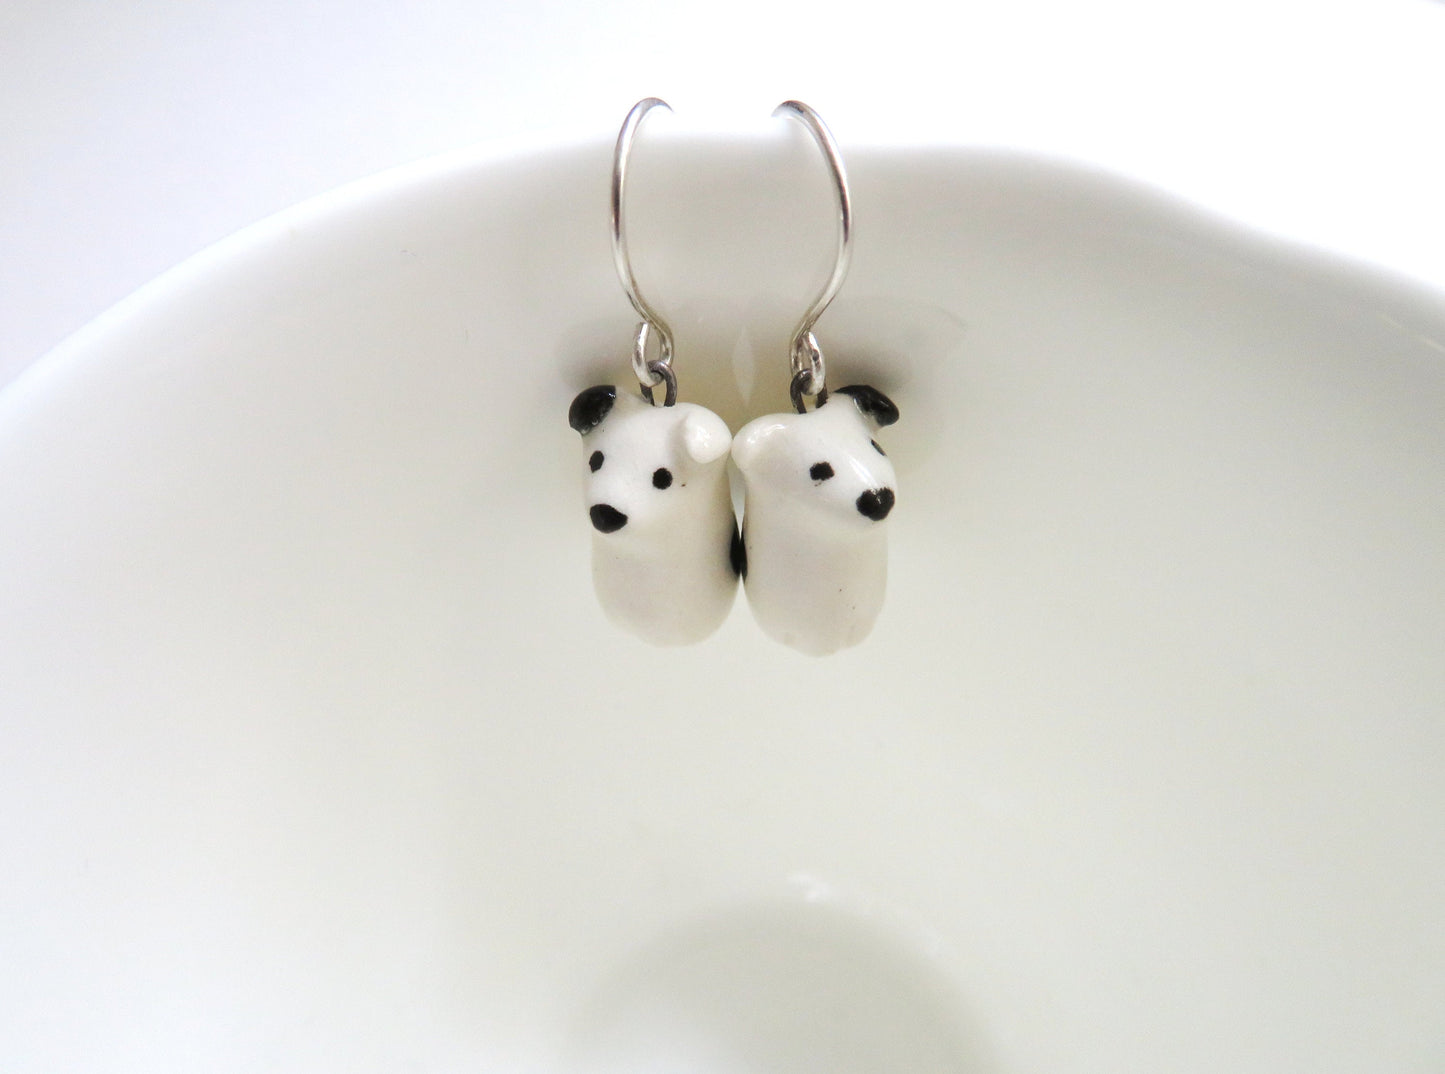 Black & White Dog Earrings